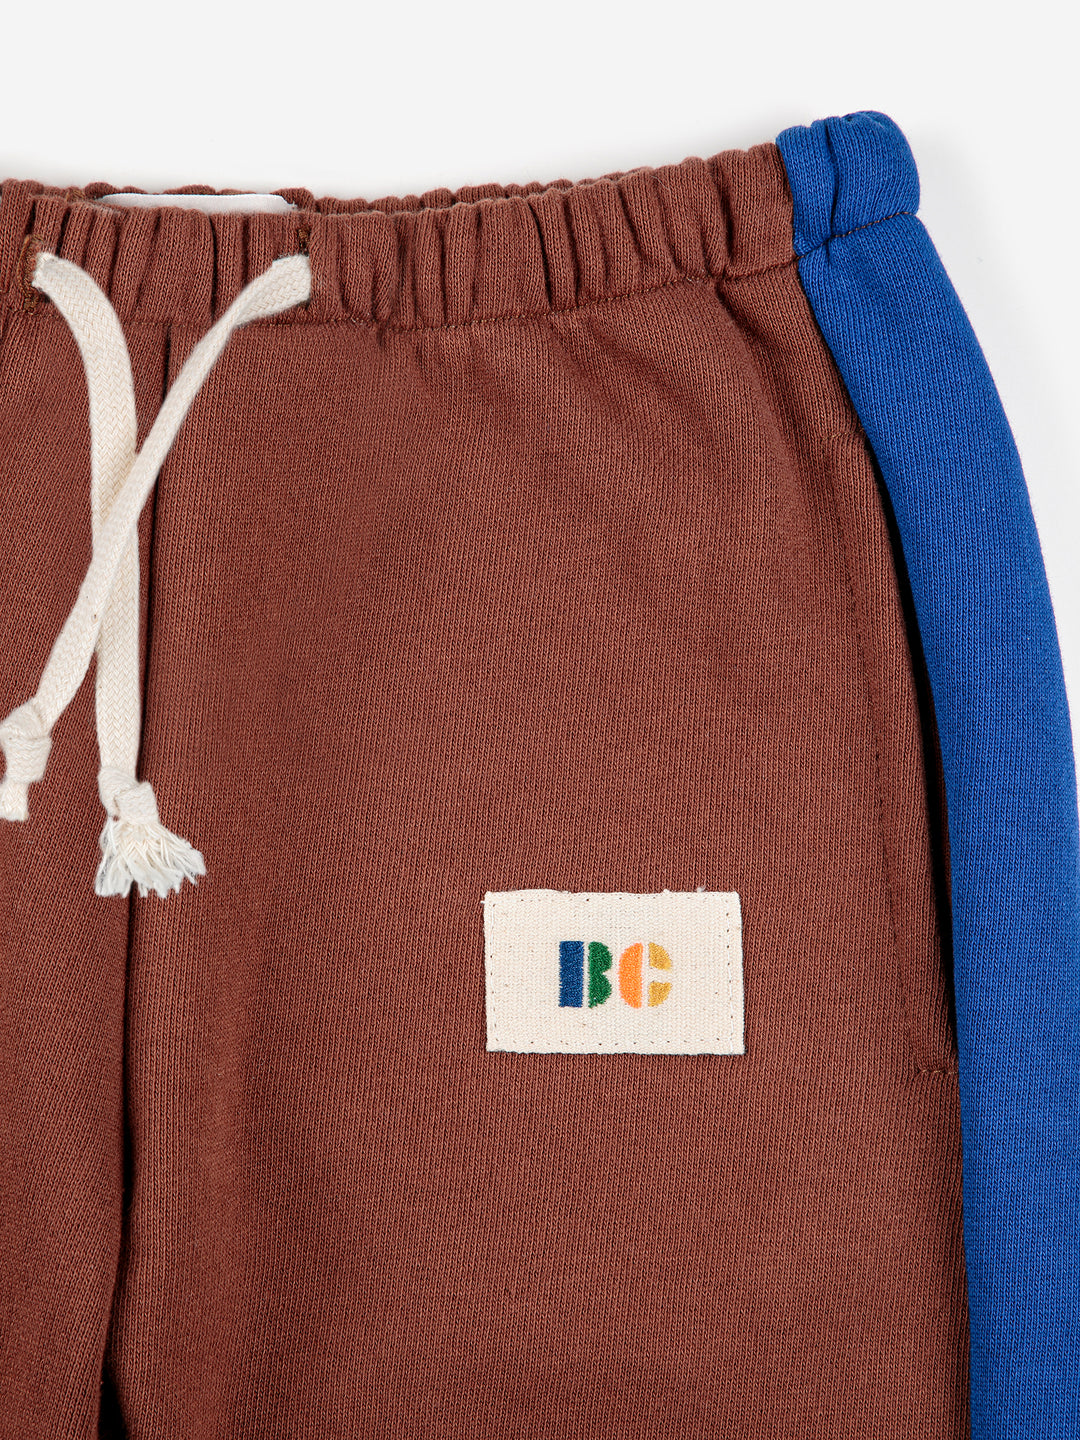 Pantalon jogging en coton biologique brun